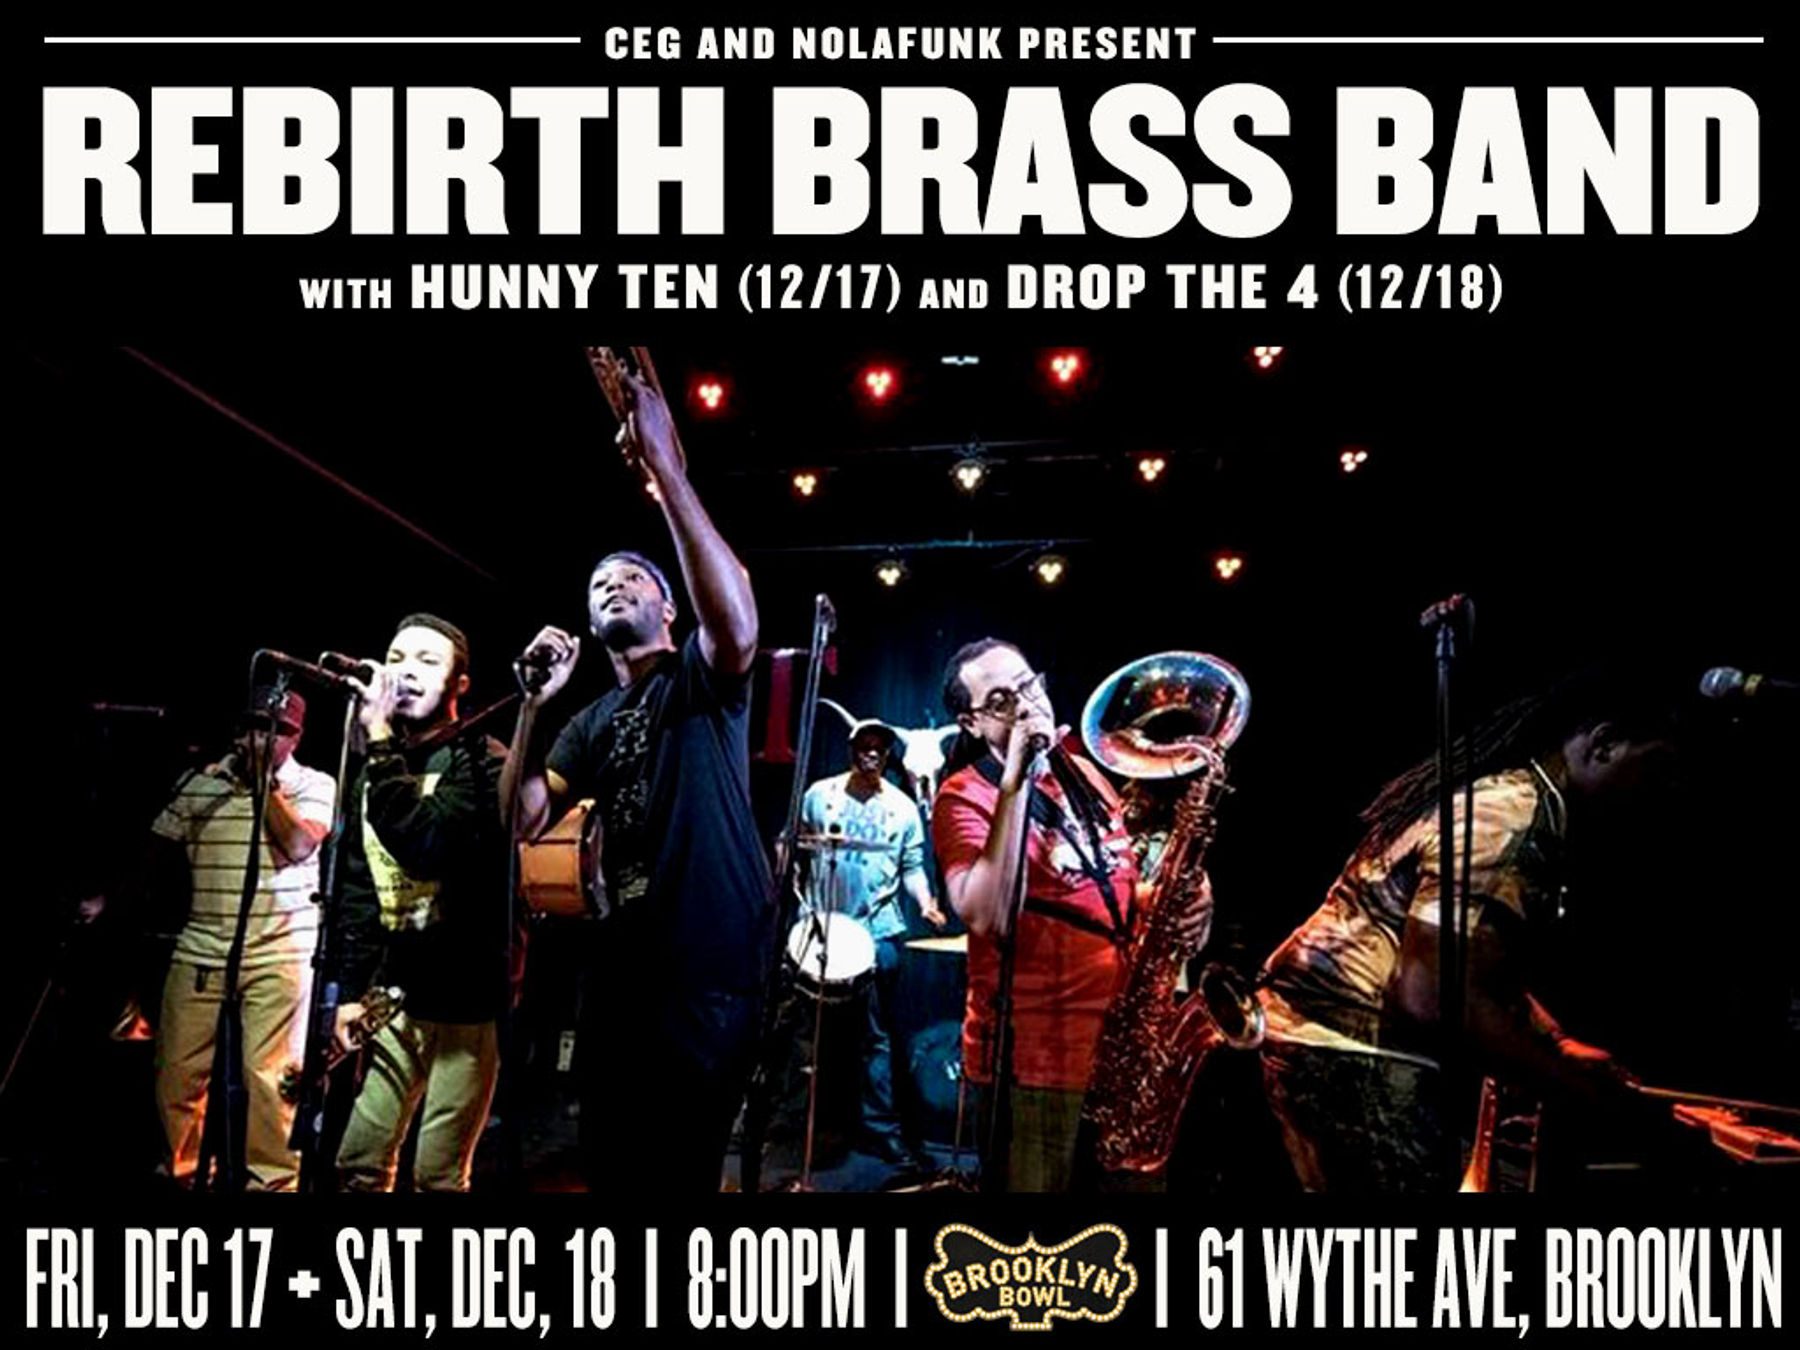 rebirth brass band tour schedule